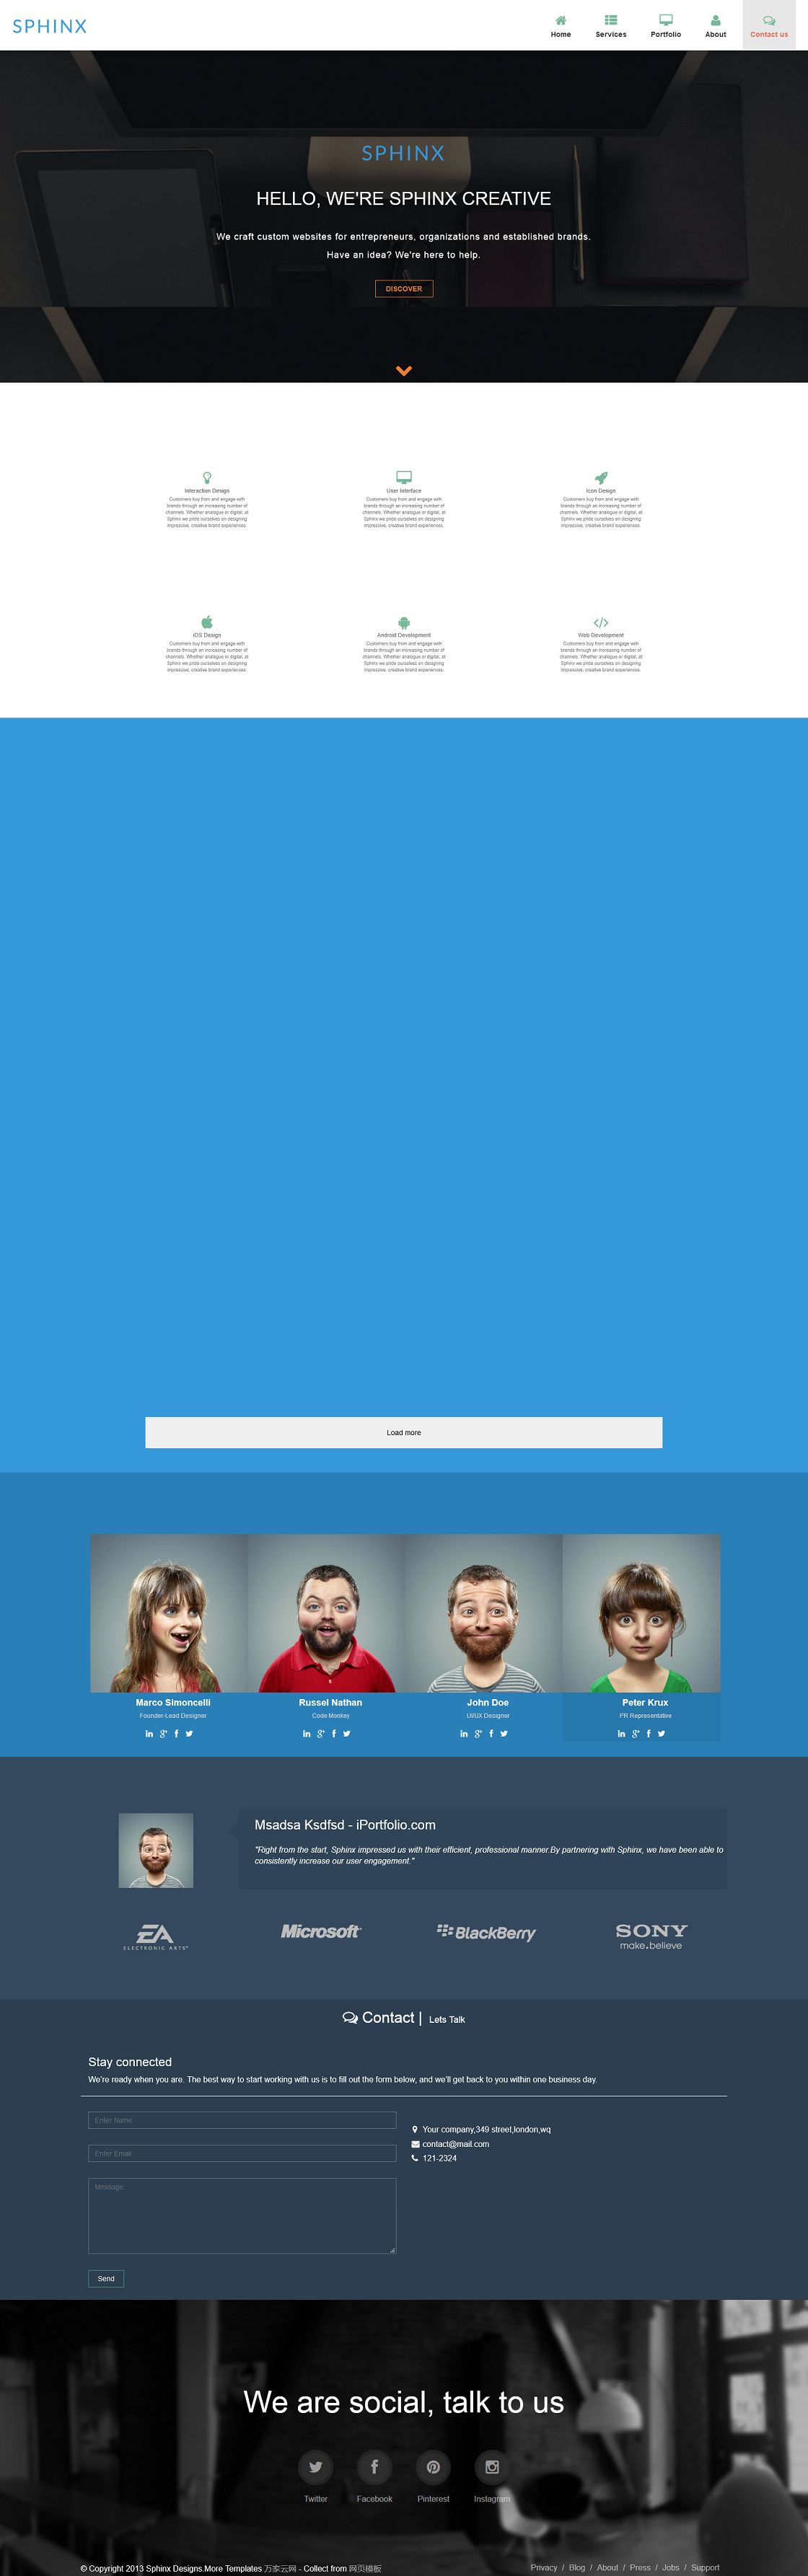 蓝色大图背景网页设计团队企业模板